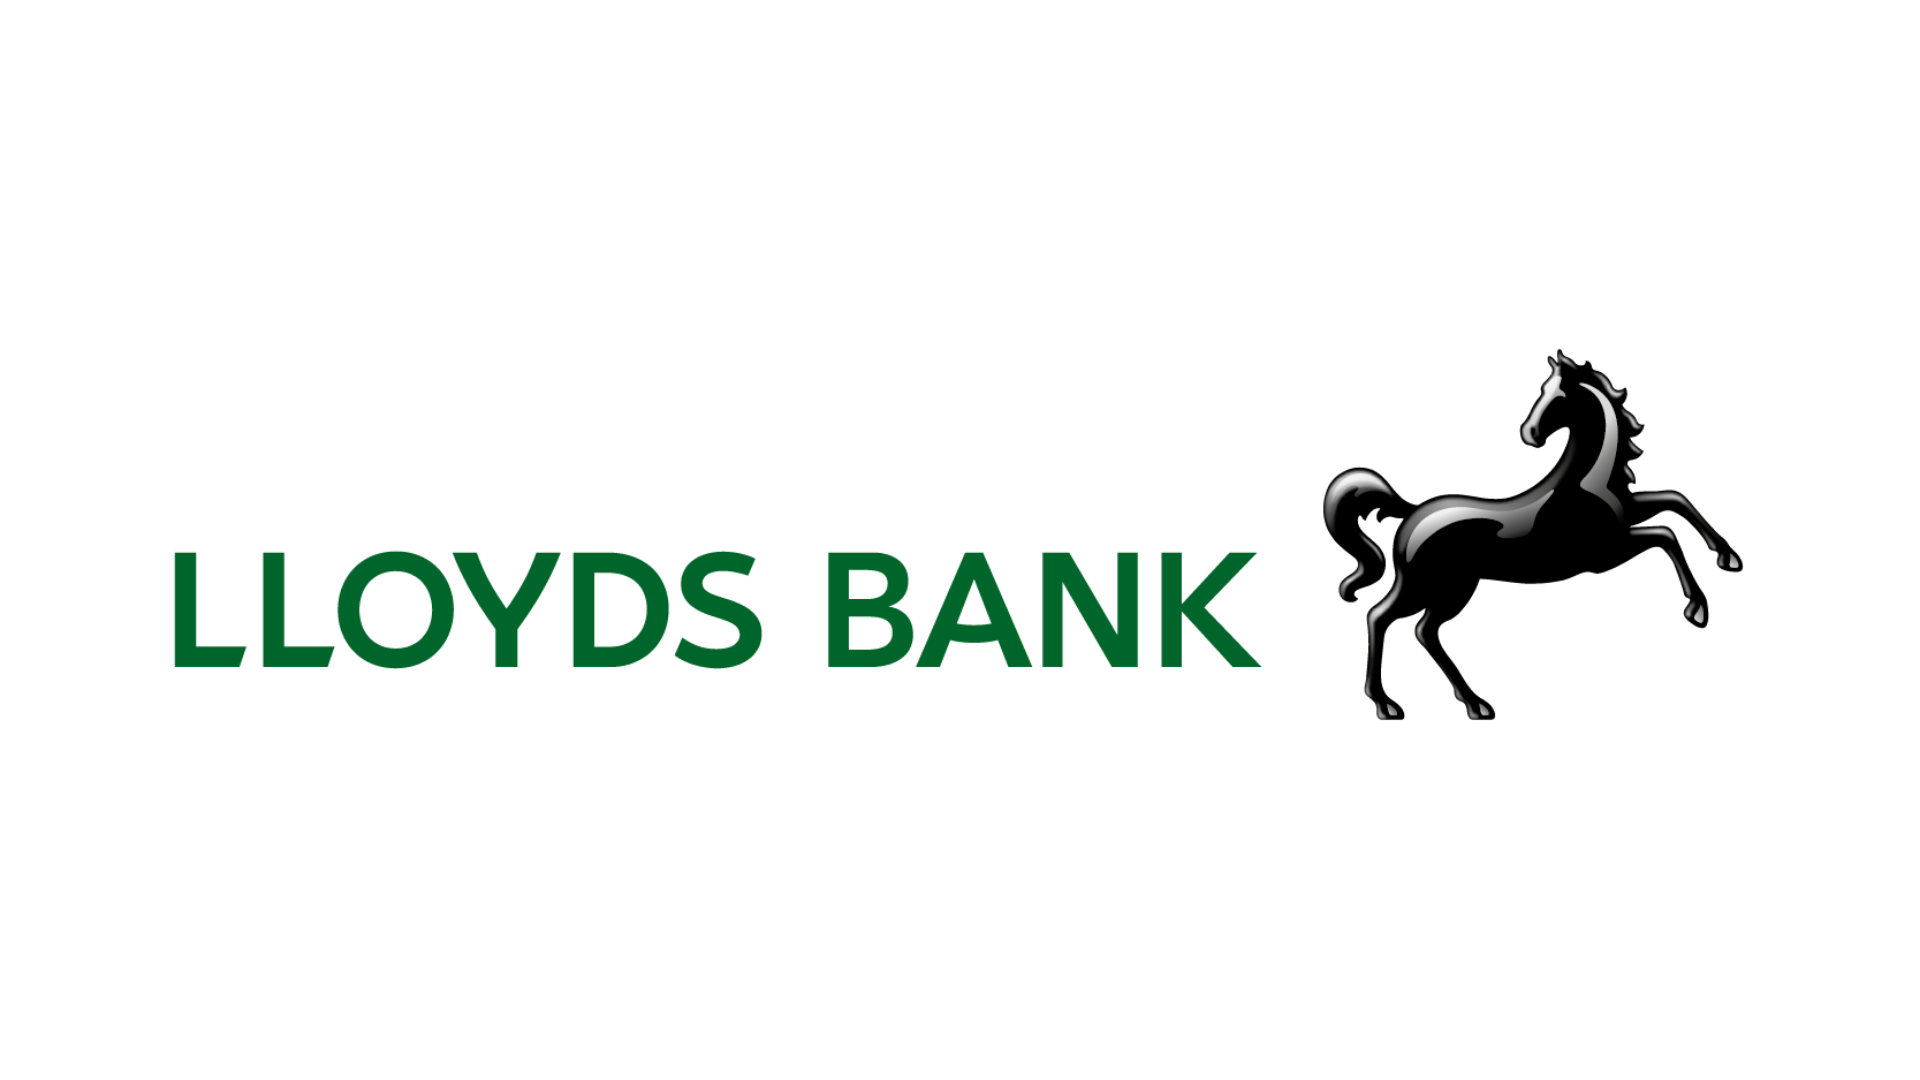 lloyds bank resized